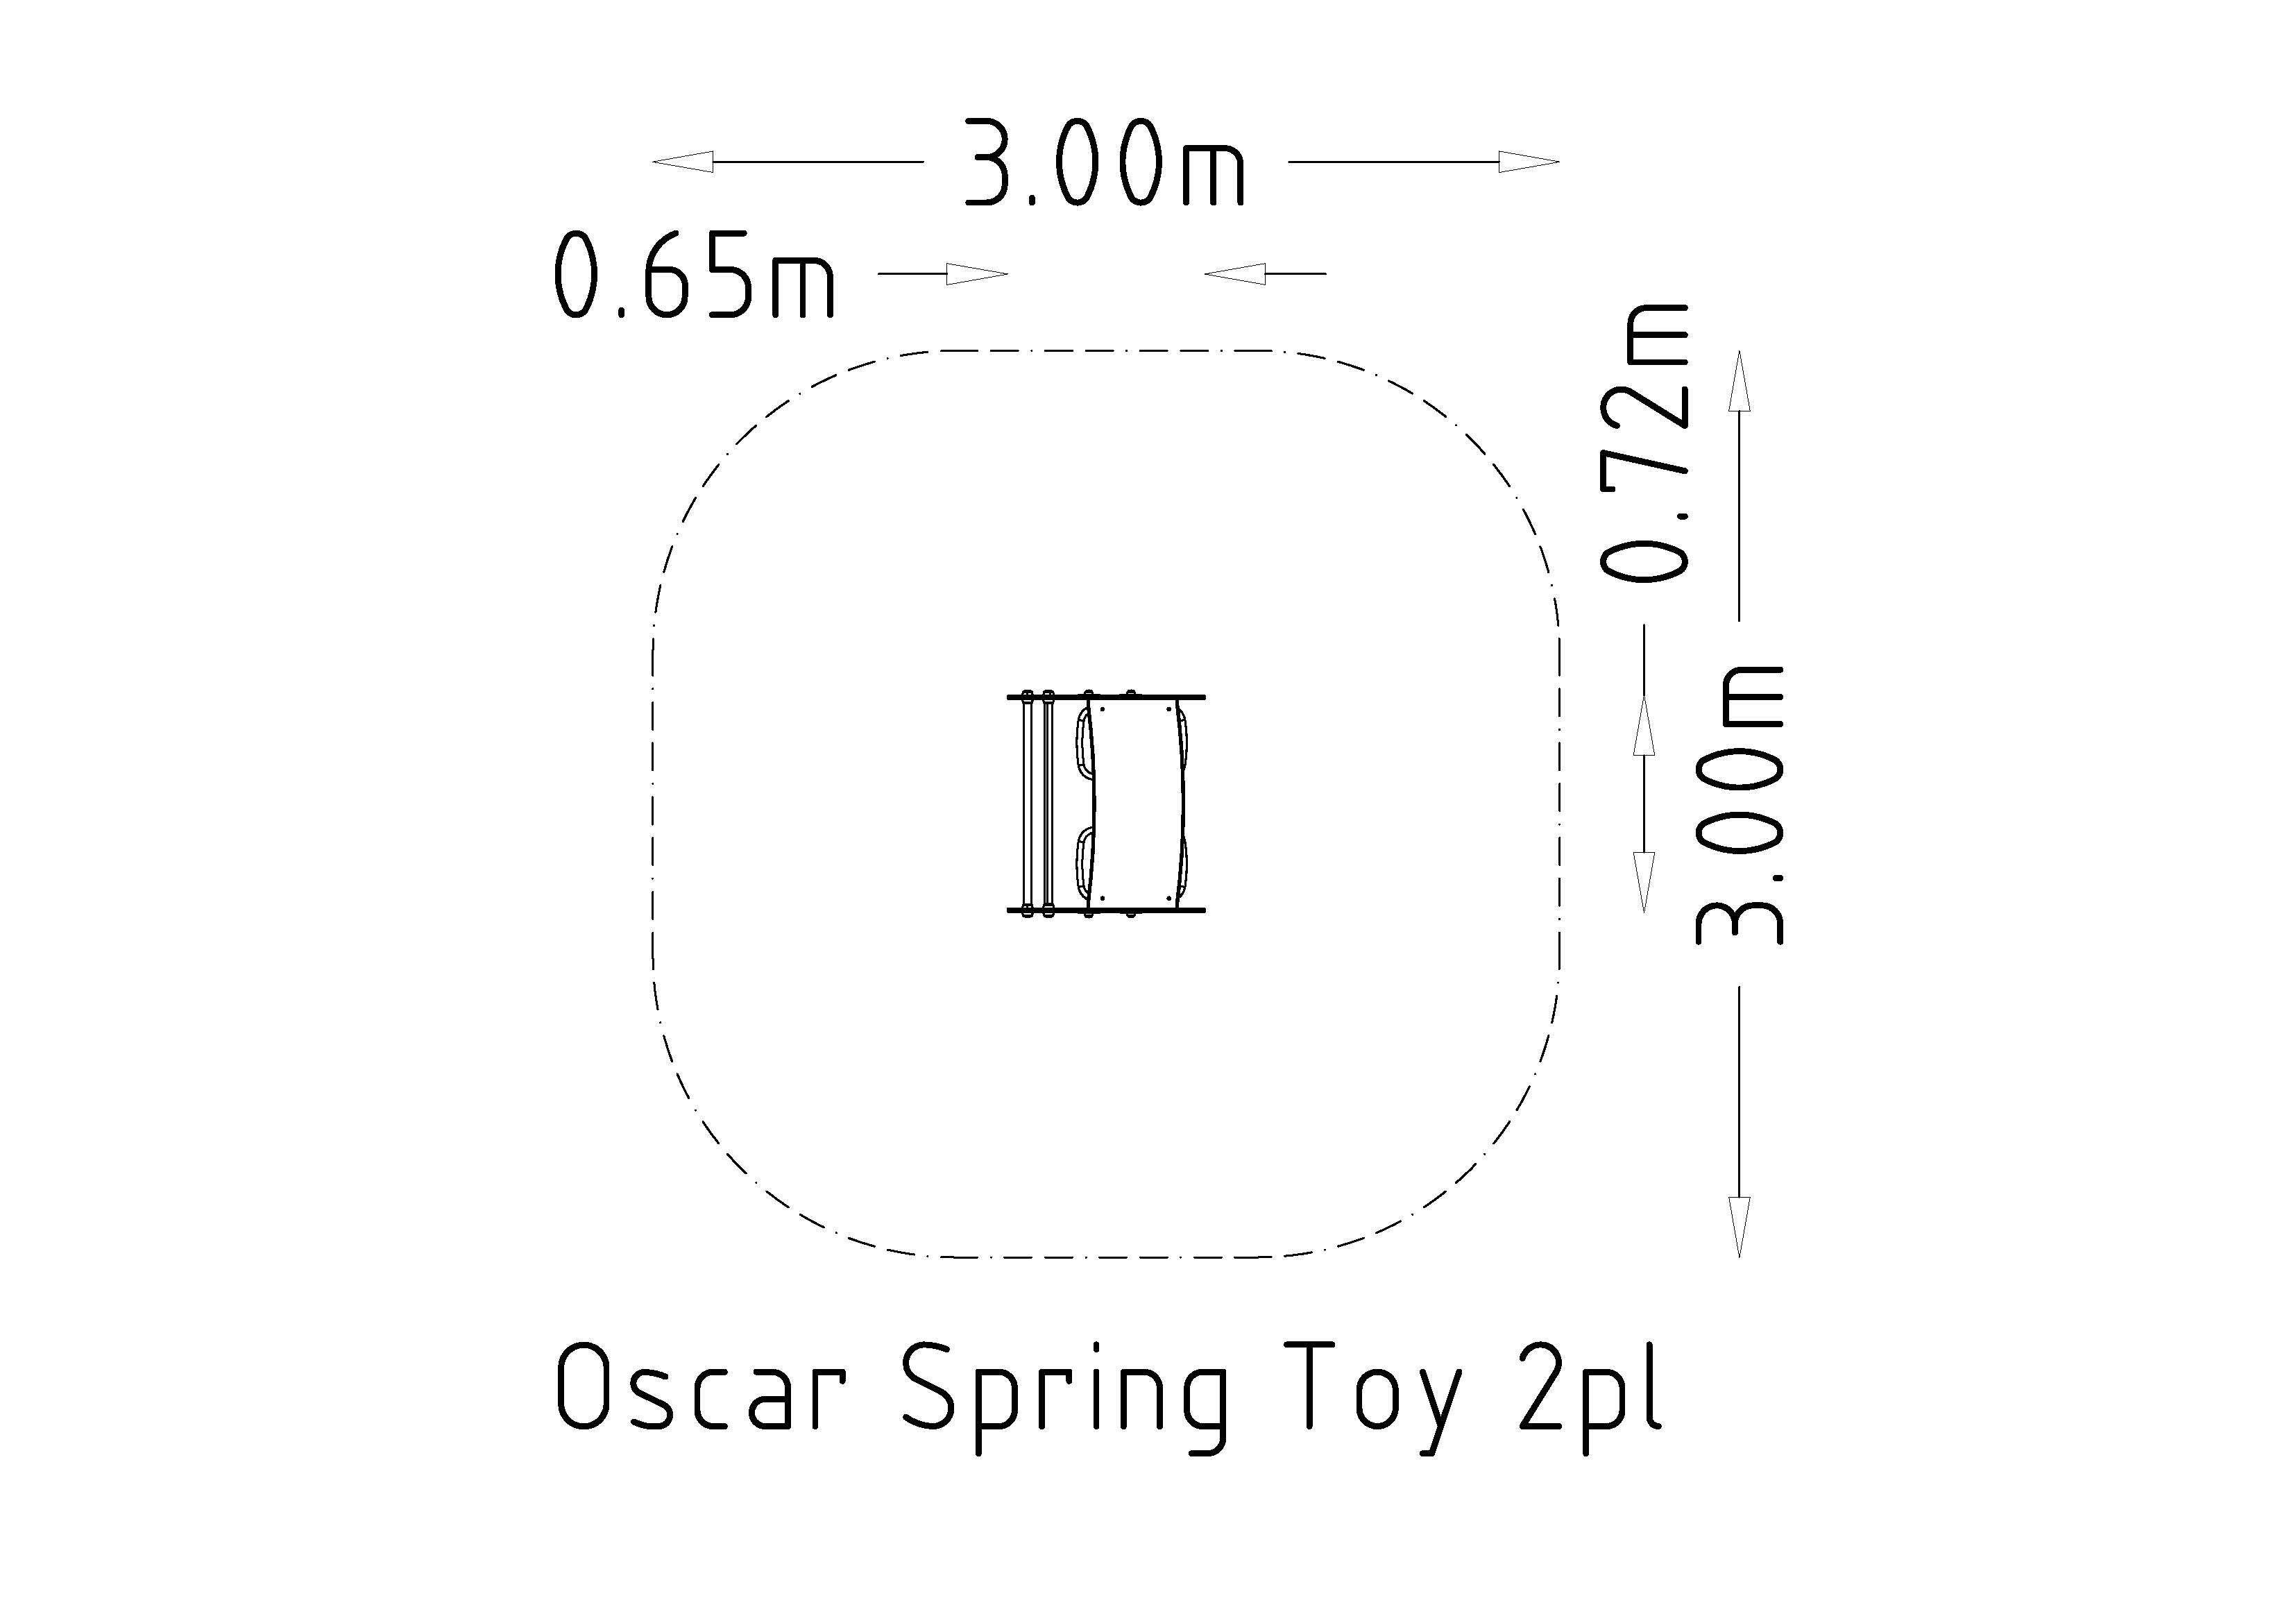 Spring Toy Oscar